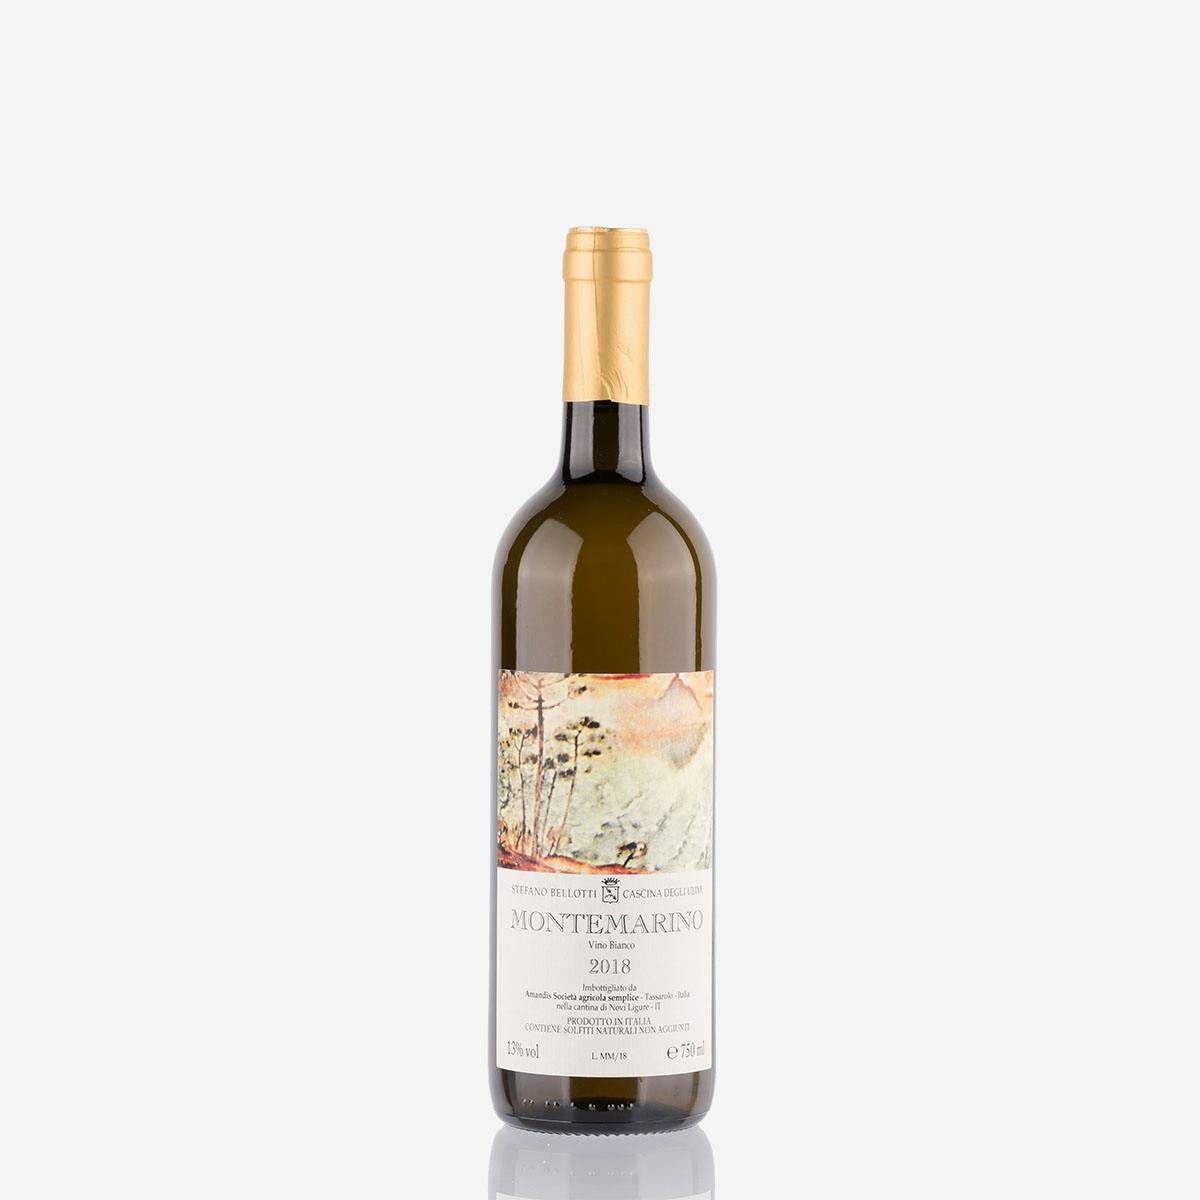 'Montemarino' Vino Bianco